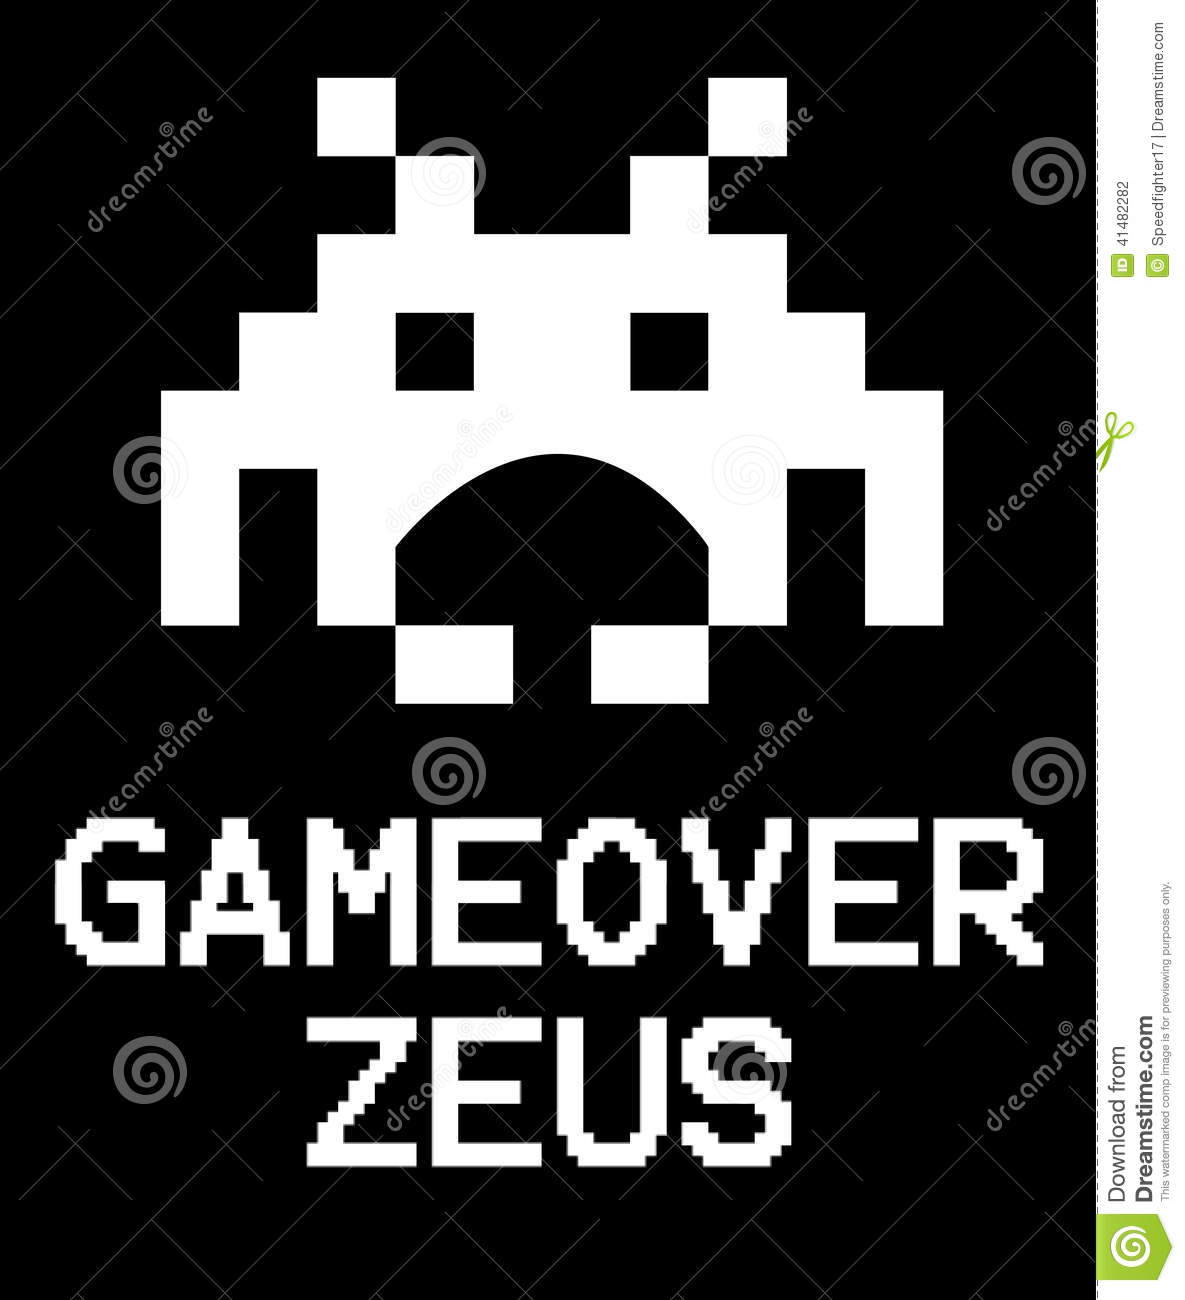 Download Zeus Virus